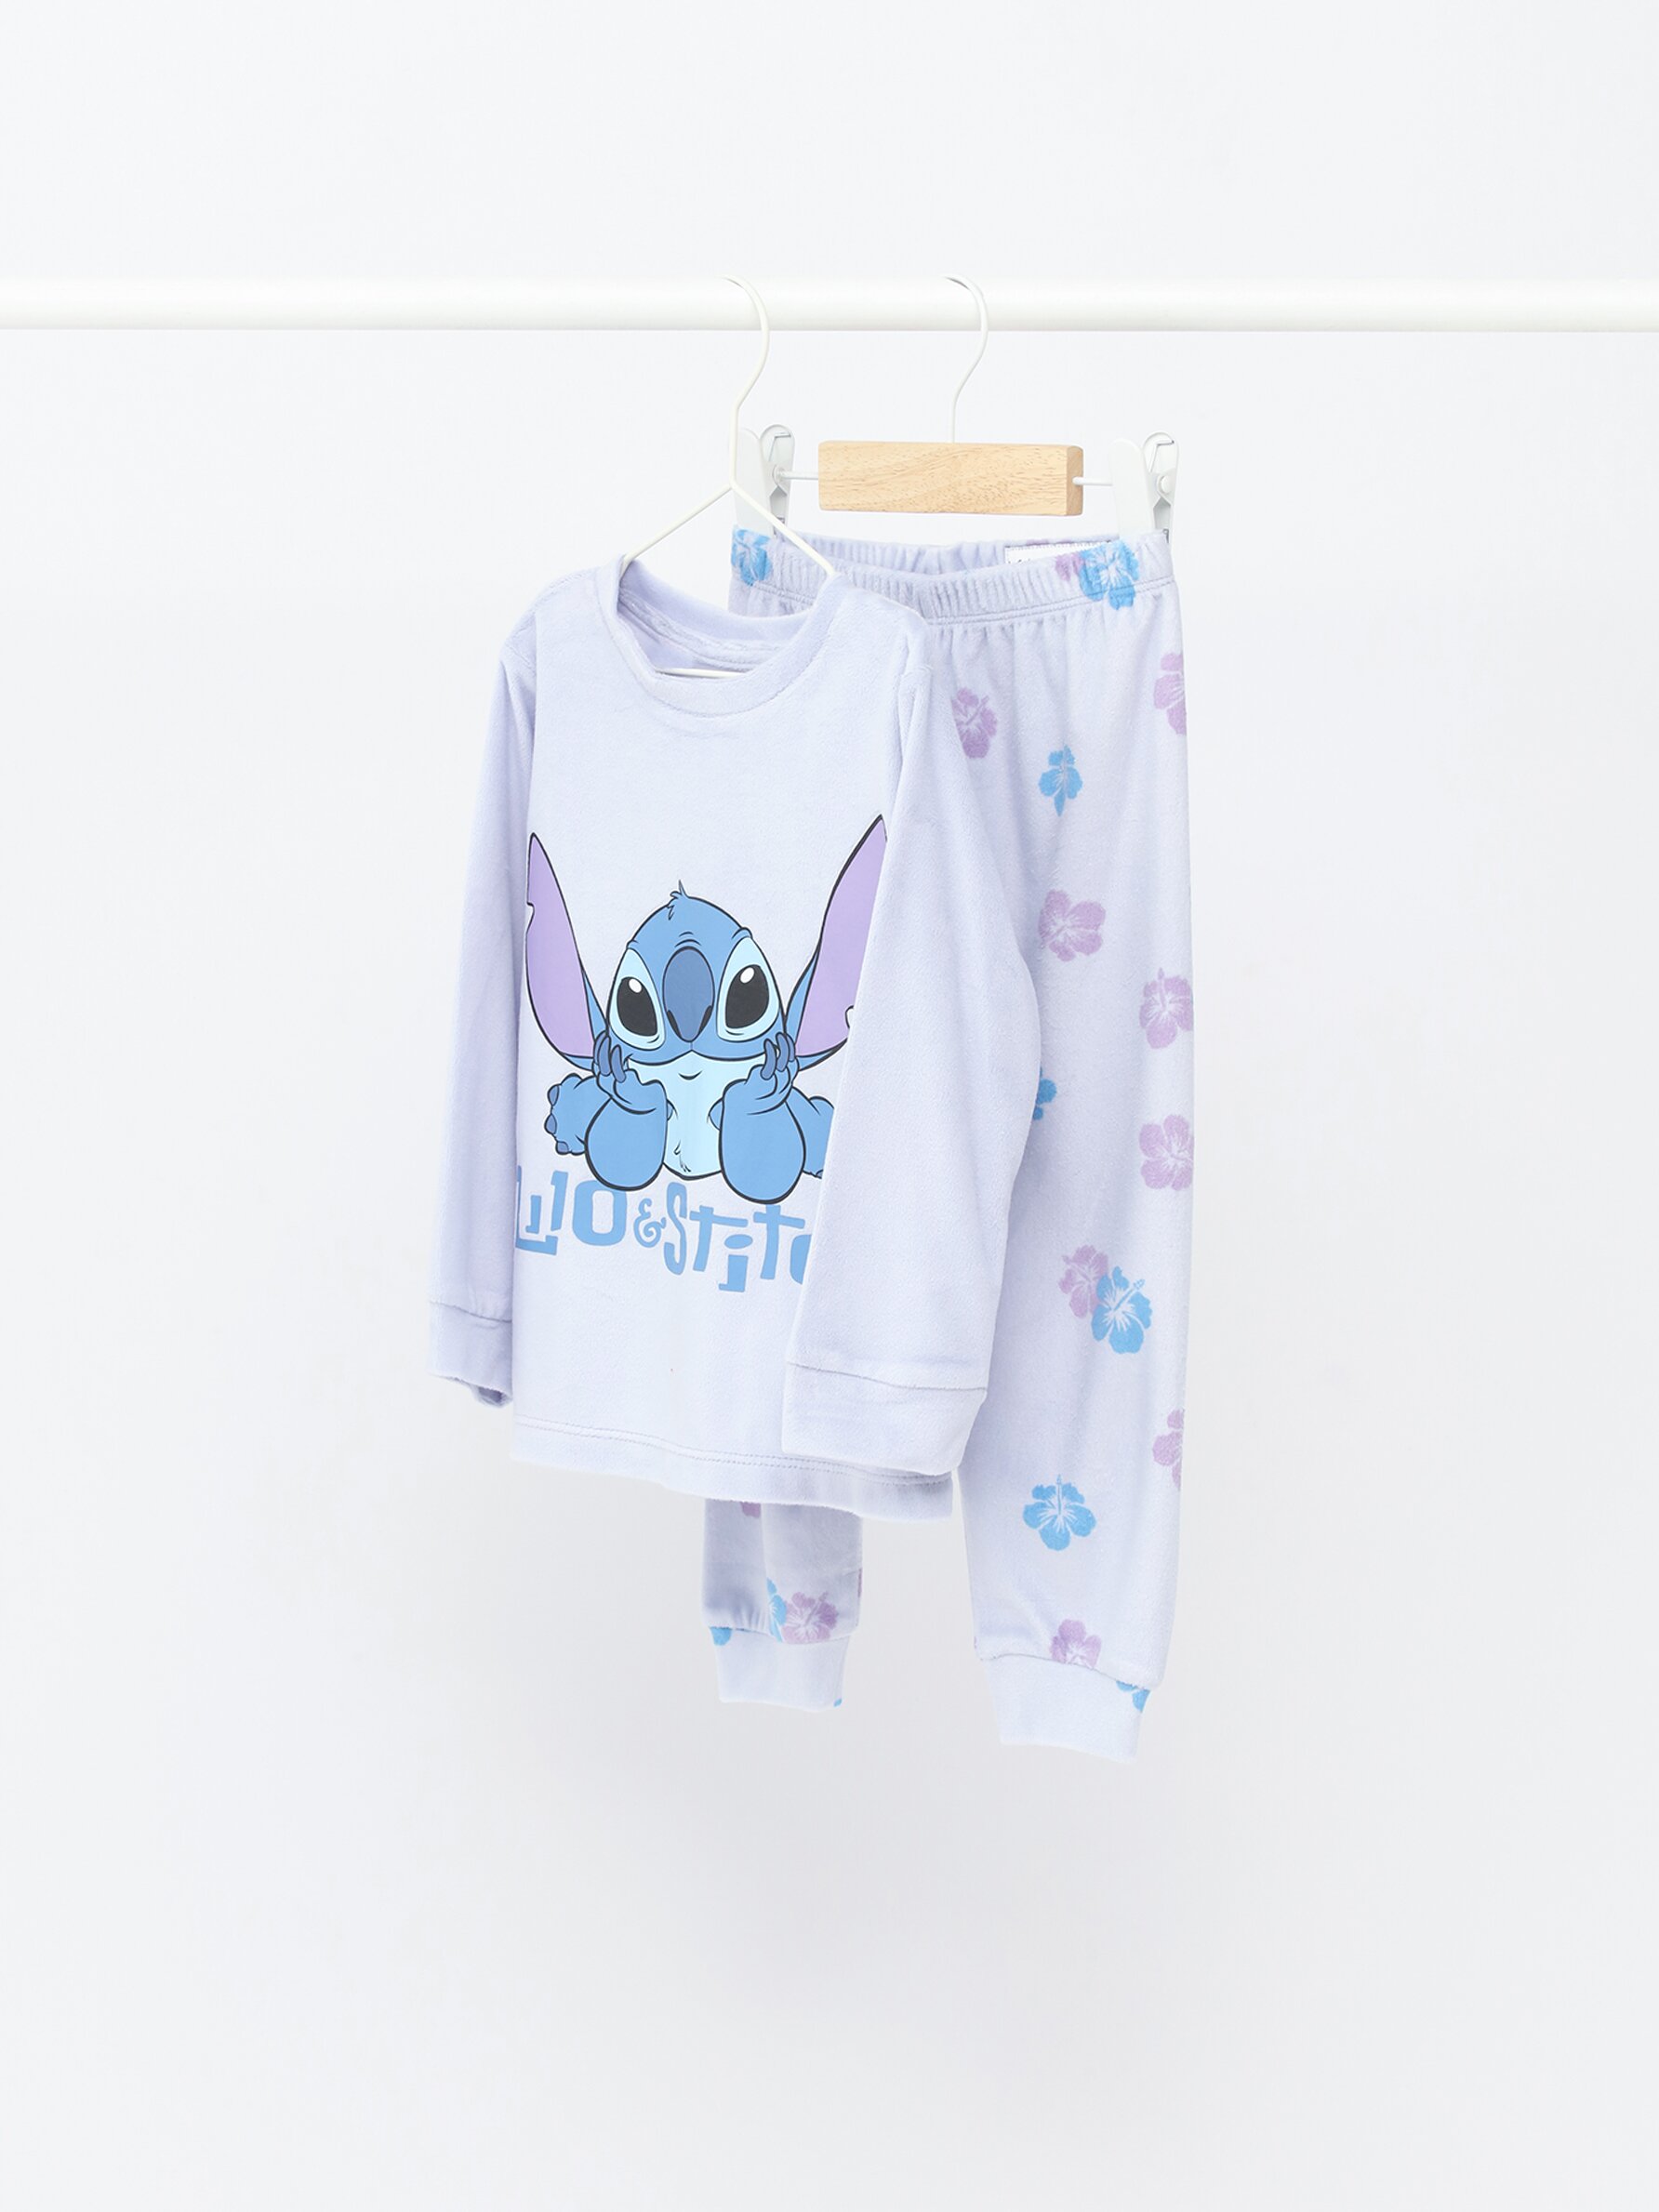 Pijama largo Lilo & Stitch blanco